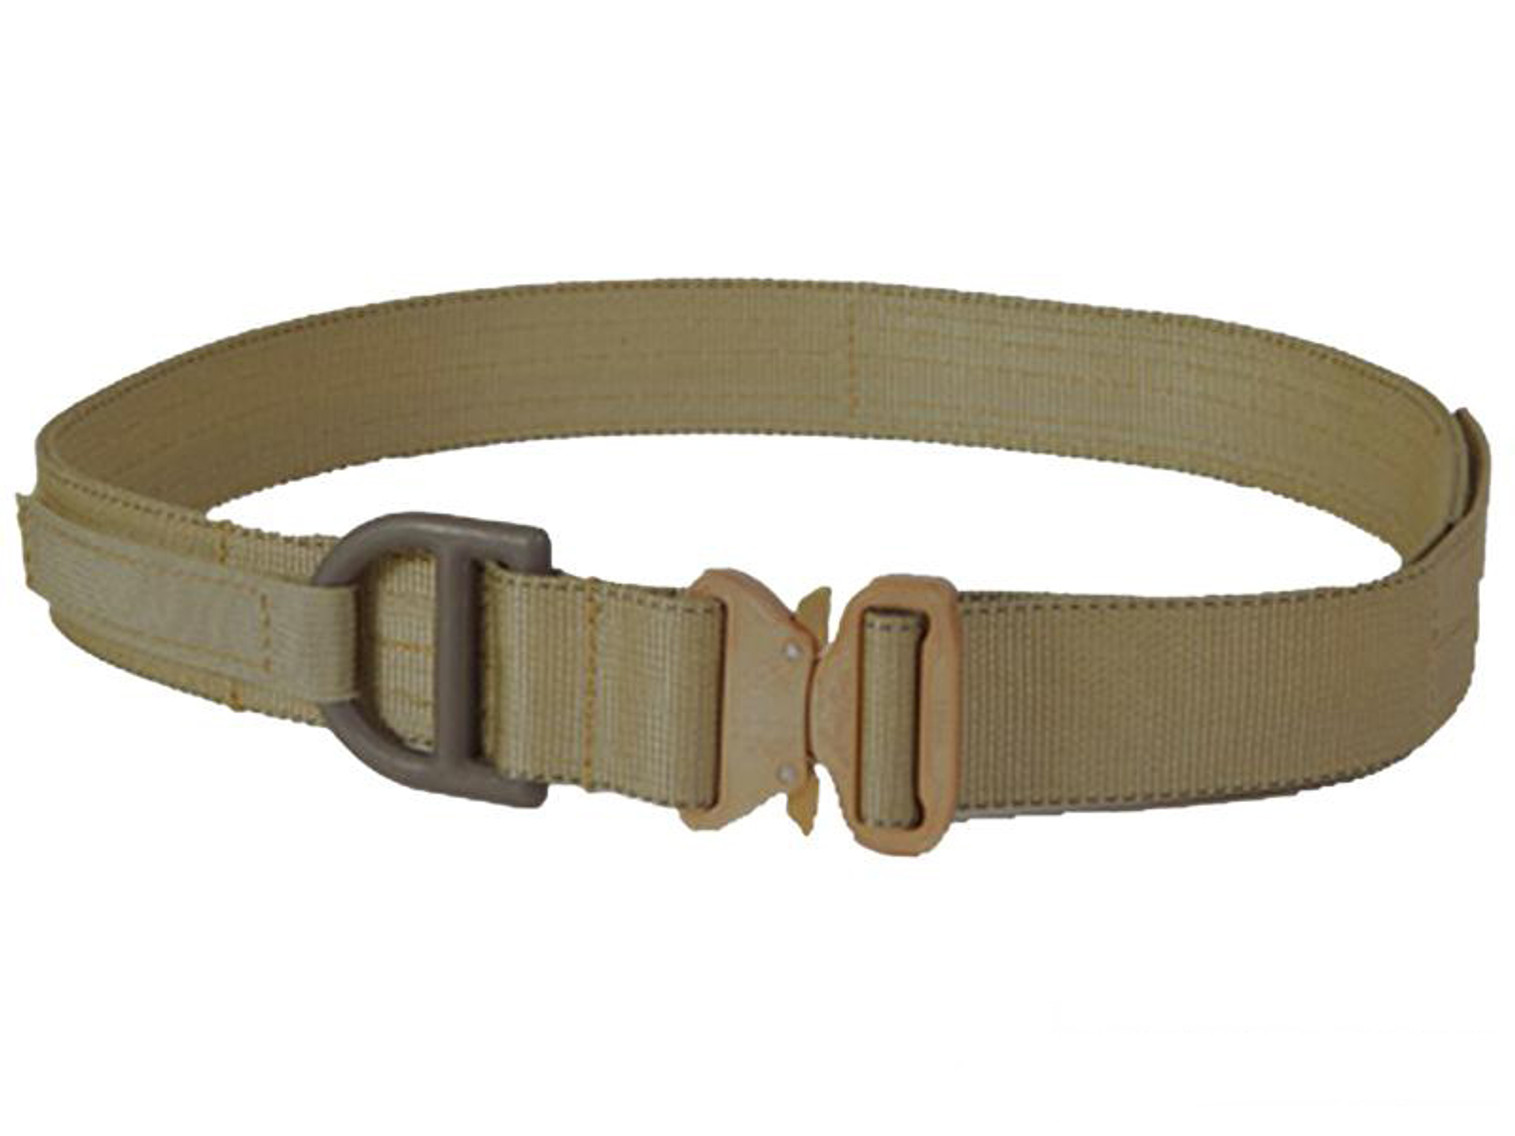 HSGI Cobra 1.75" Rigger Belt (Color: Coyote Brown / Small)